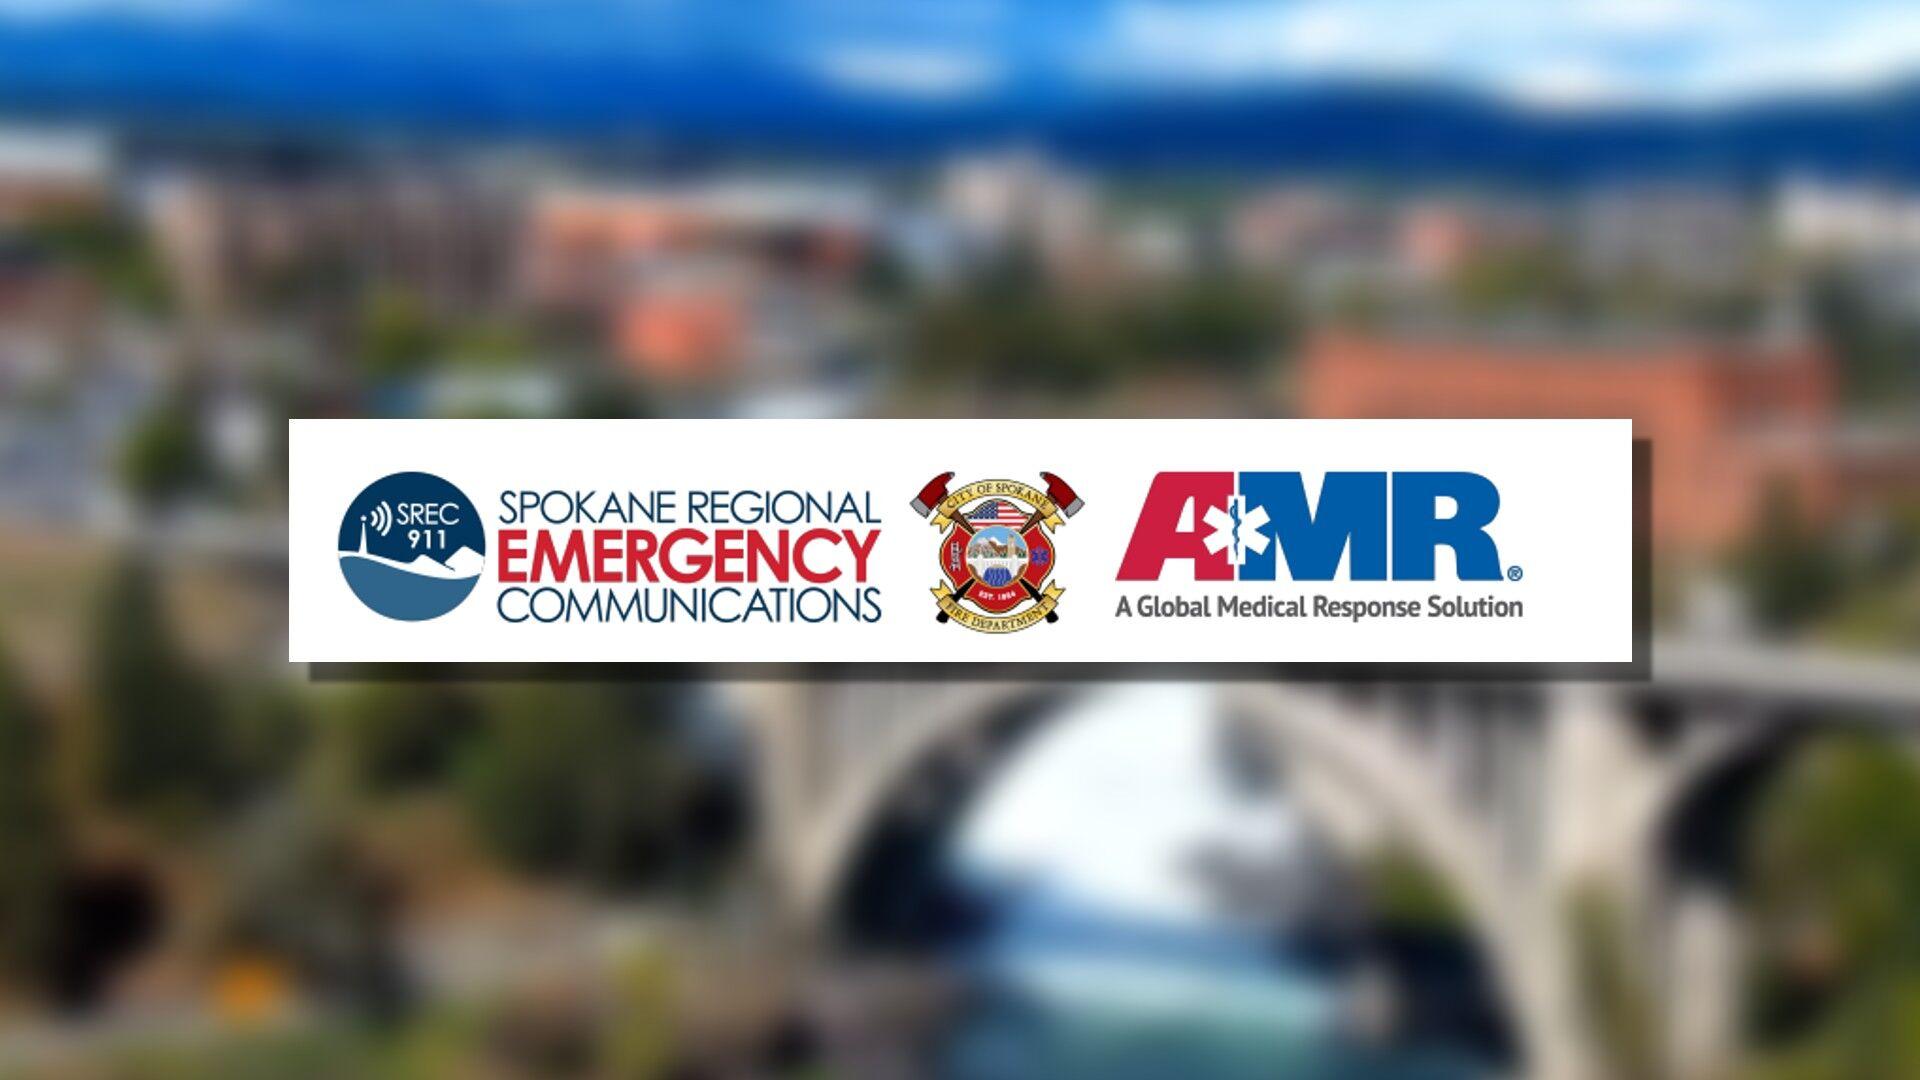 New emergency response program rolls out in Spokane [Video]